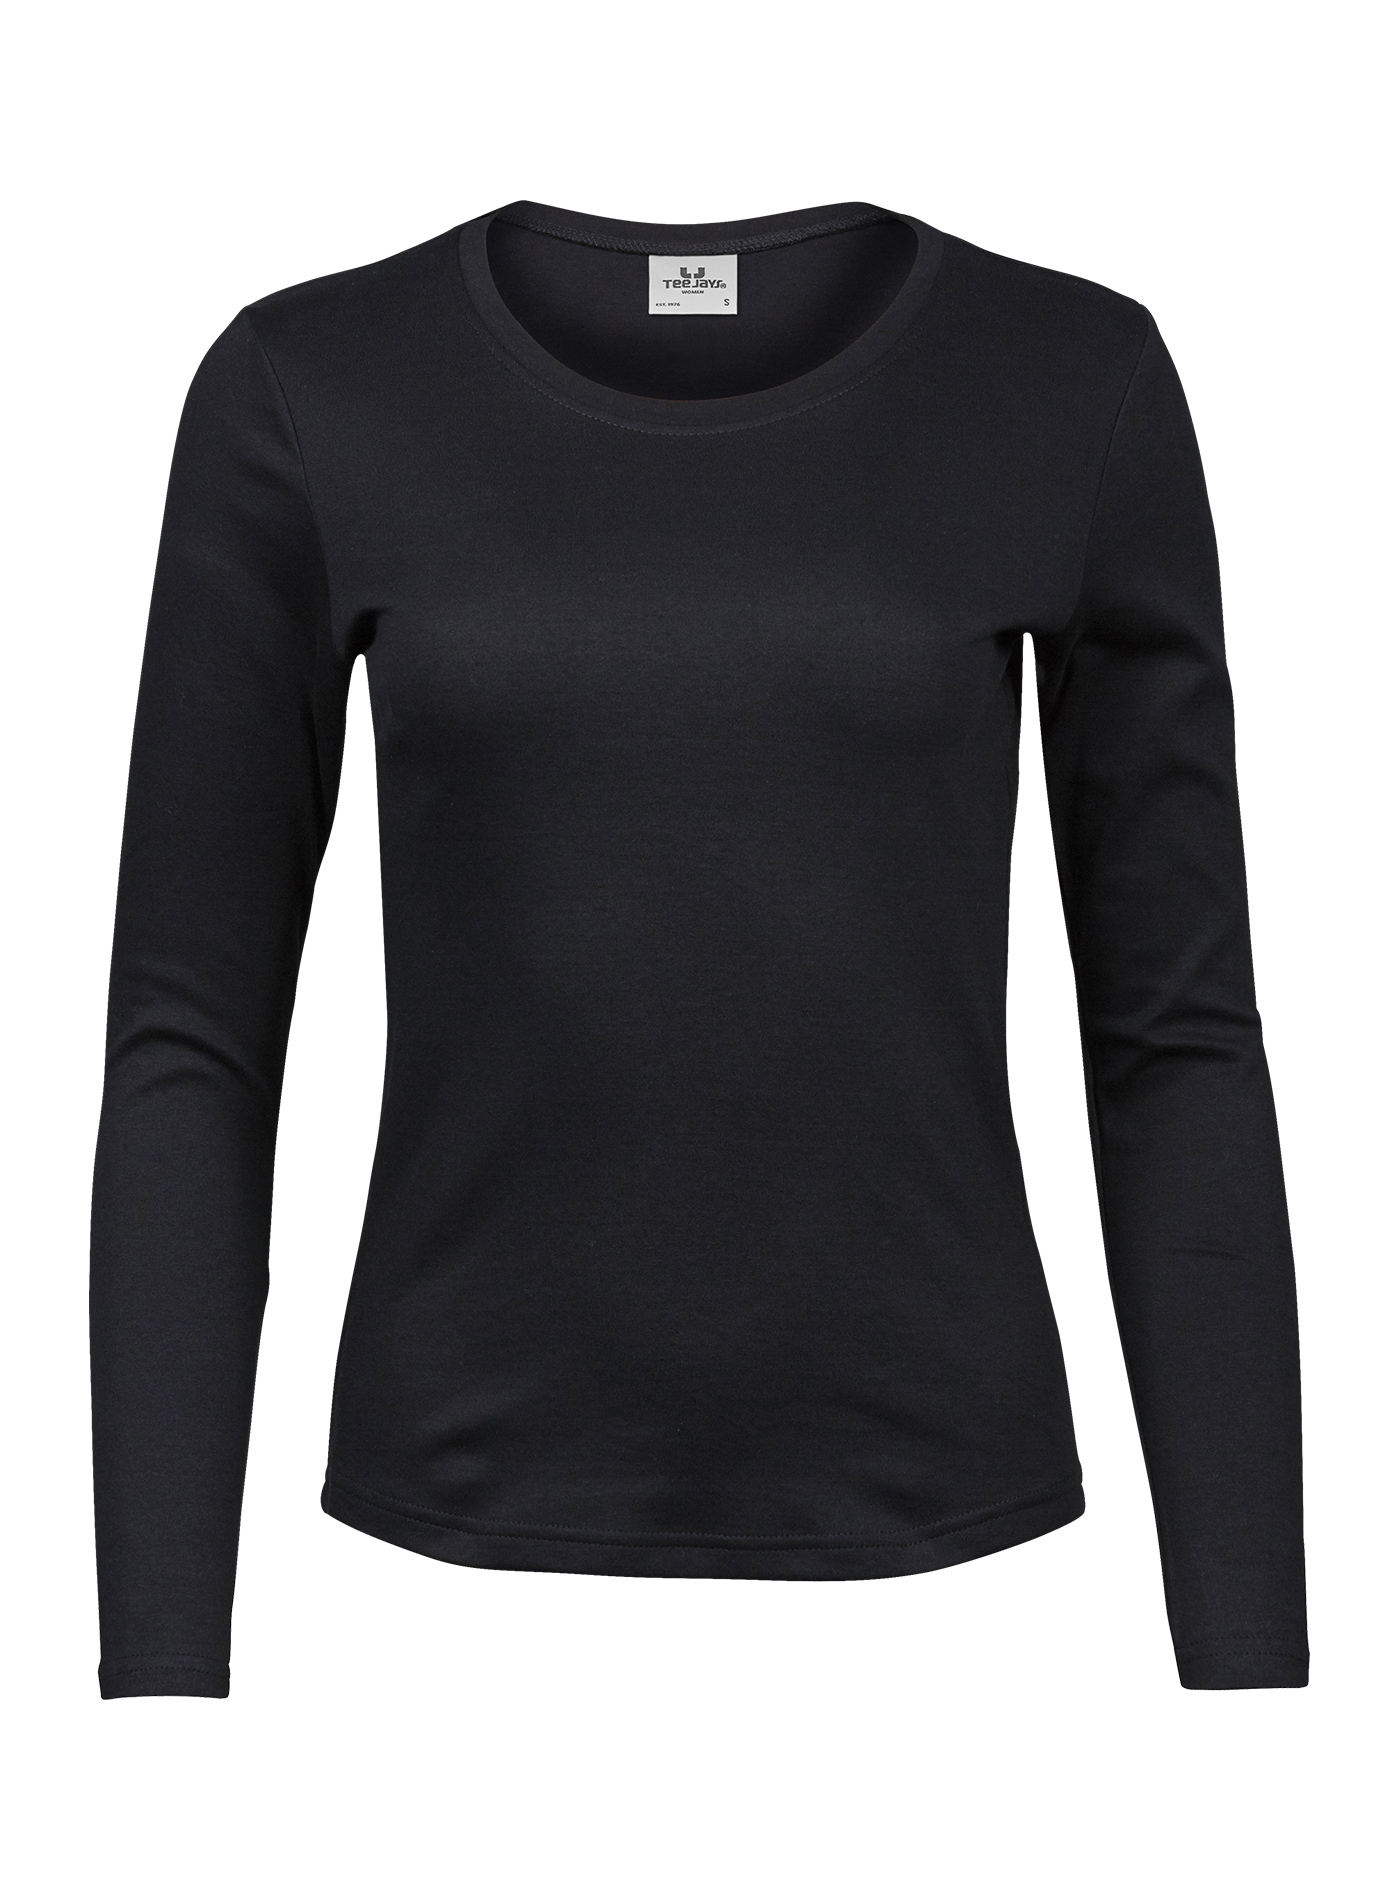 Dámské tričko s dlouhými rukávy Tee Jays Interlock - černá 3XL